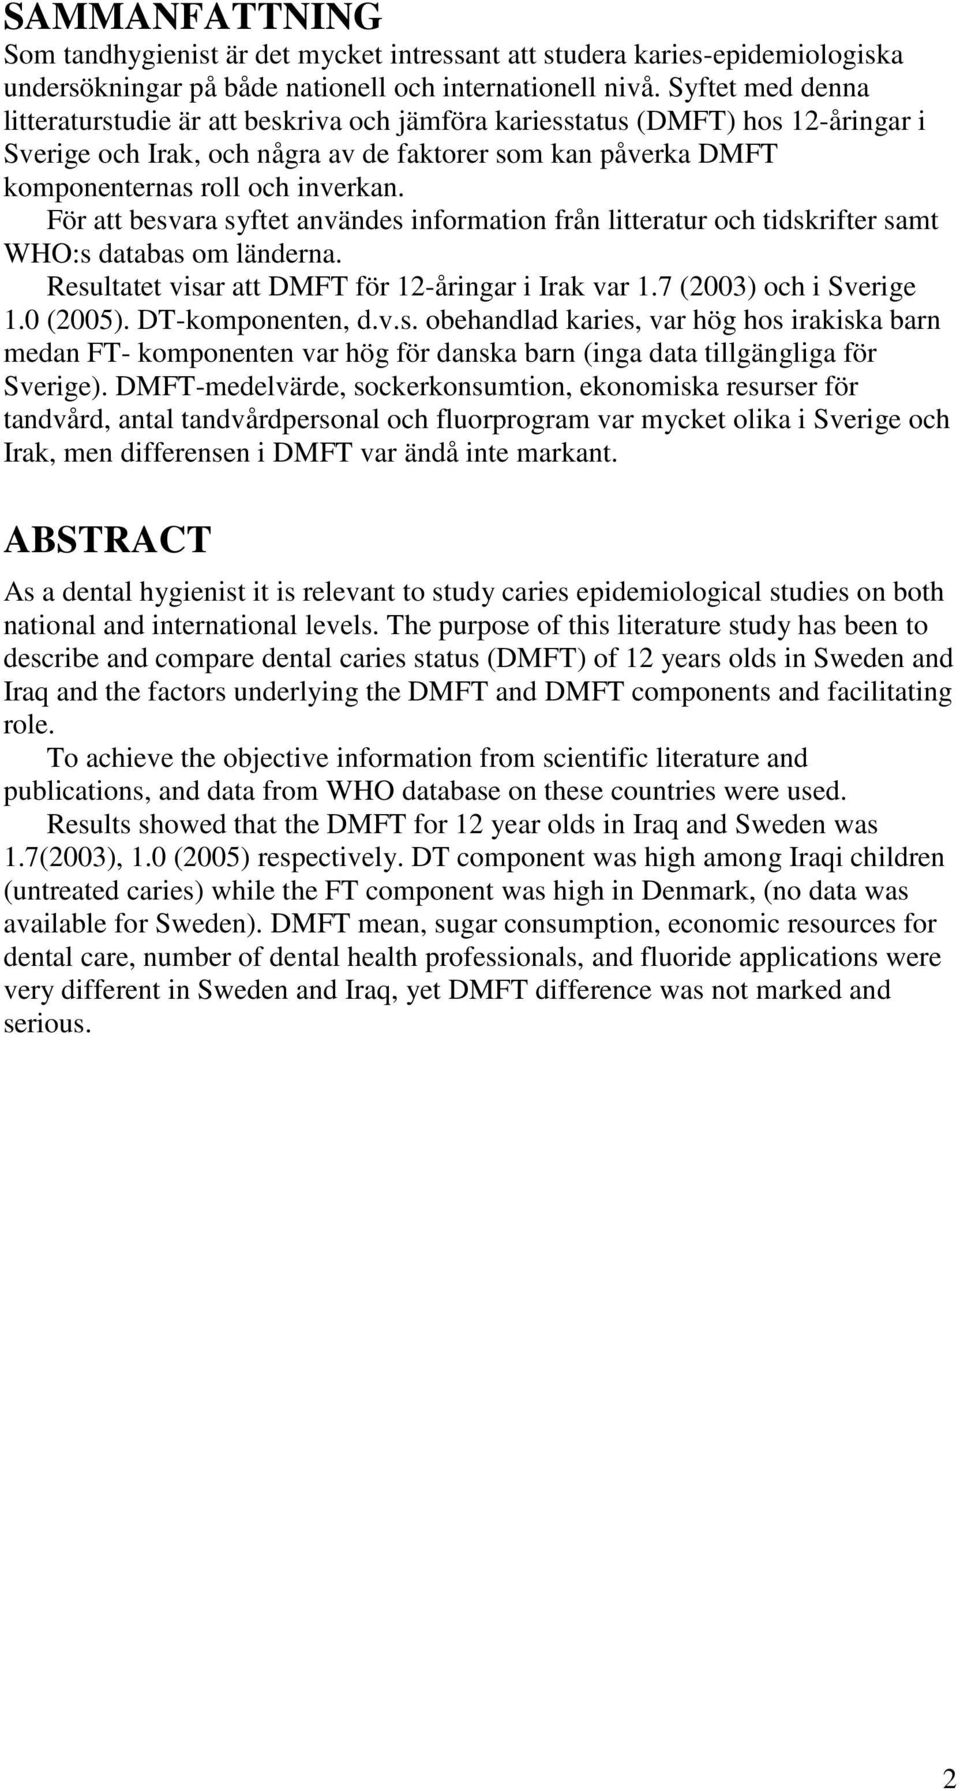 För att besvara syftet användes information från litteratur och tidskrifter samt WHO:s databas om länderna. Resultatet visar att DMFT för 12-åringar i Irak var 1.7 (2003) och i Sverige 1.0 (2005).